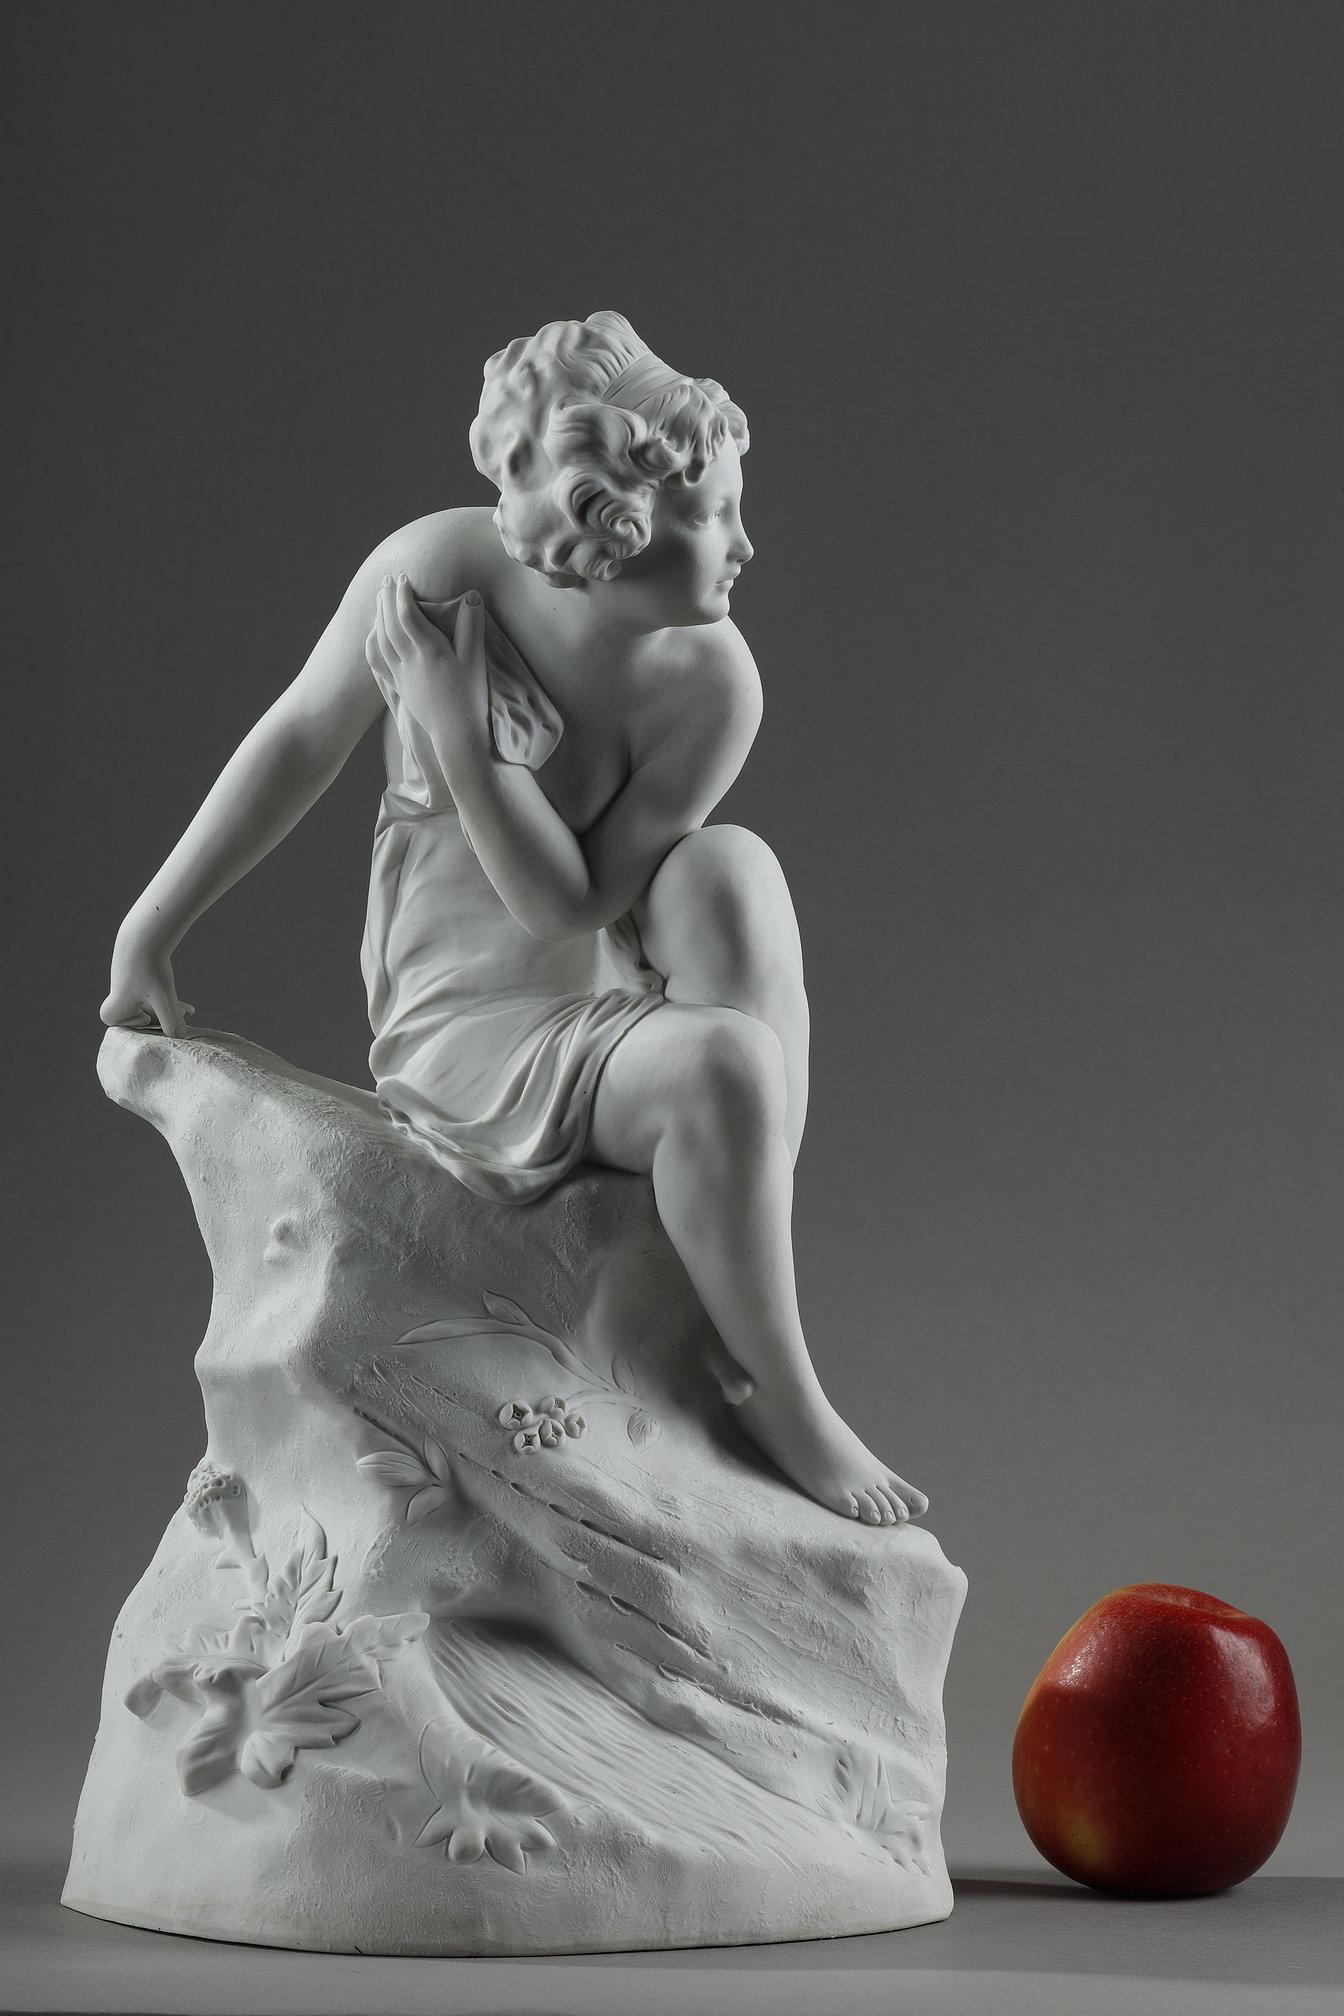 Statuette aus Biskuitporzellan, die eine nackte Frau auf einem Felsen sitzend darstellt, nach dem italienischen Bildhauer Raphaël Nannini. Auf der Rückseite eingraviert: 